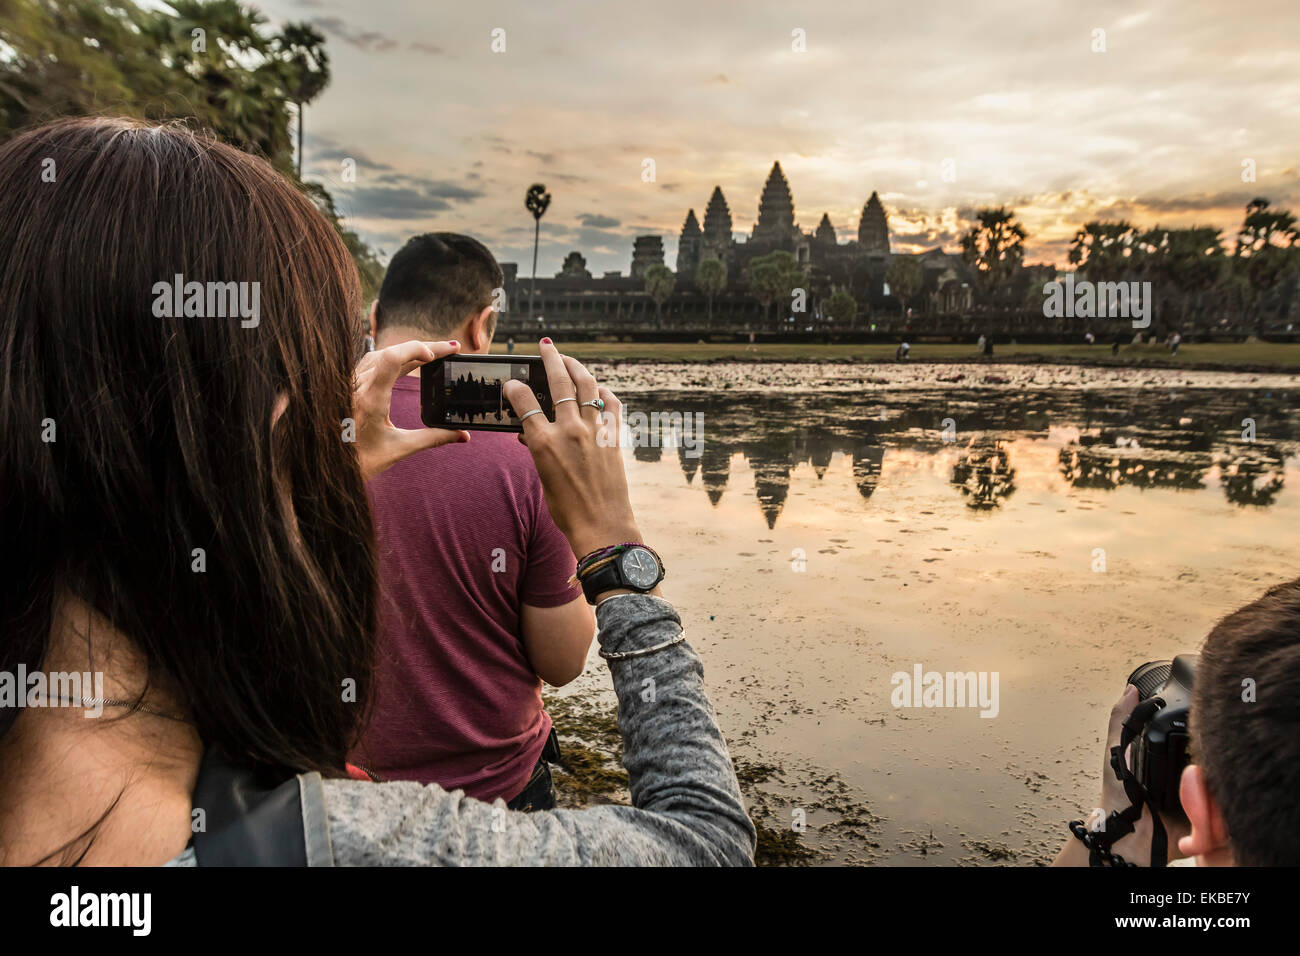 Les touristes de photographier le lever du soleil sur l'entrée ouest de Angkor Wat, Angkor, l'UNESCO, Siem Reap, Cambodge, Indochine, Asie Banque D'Images